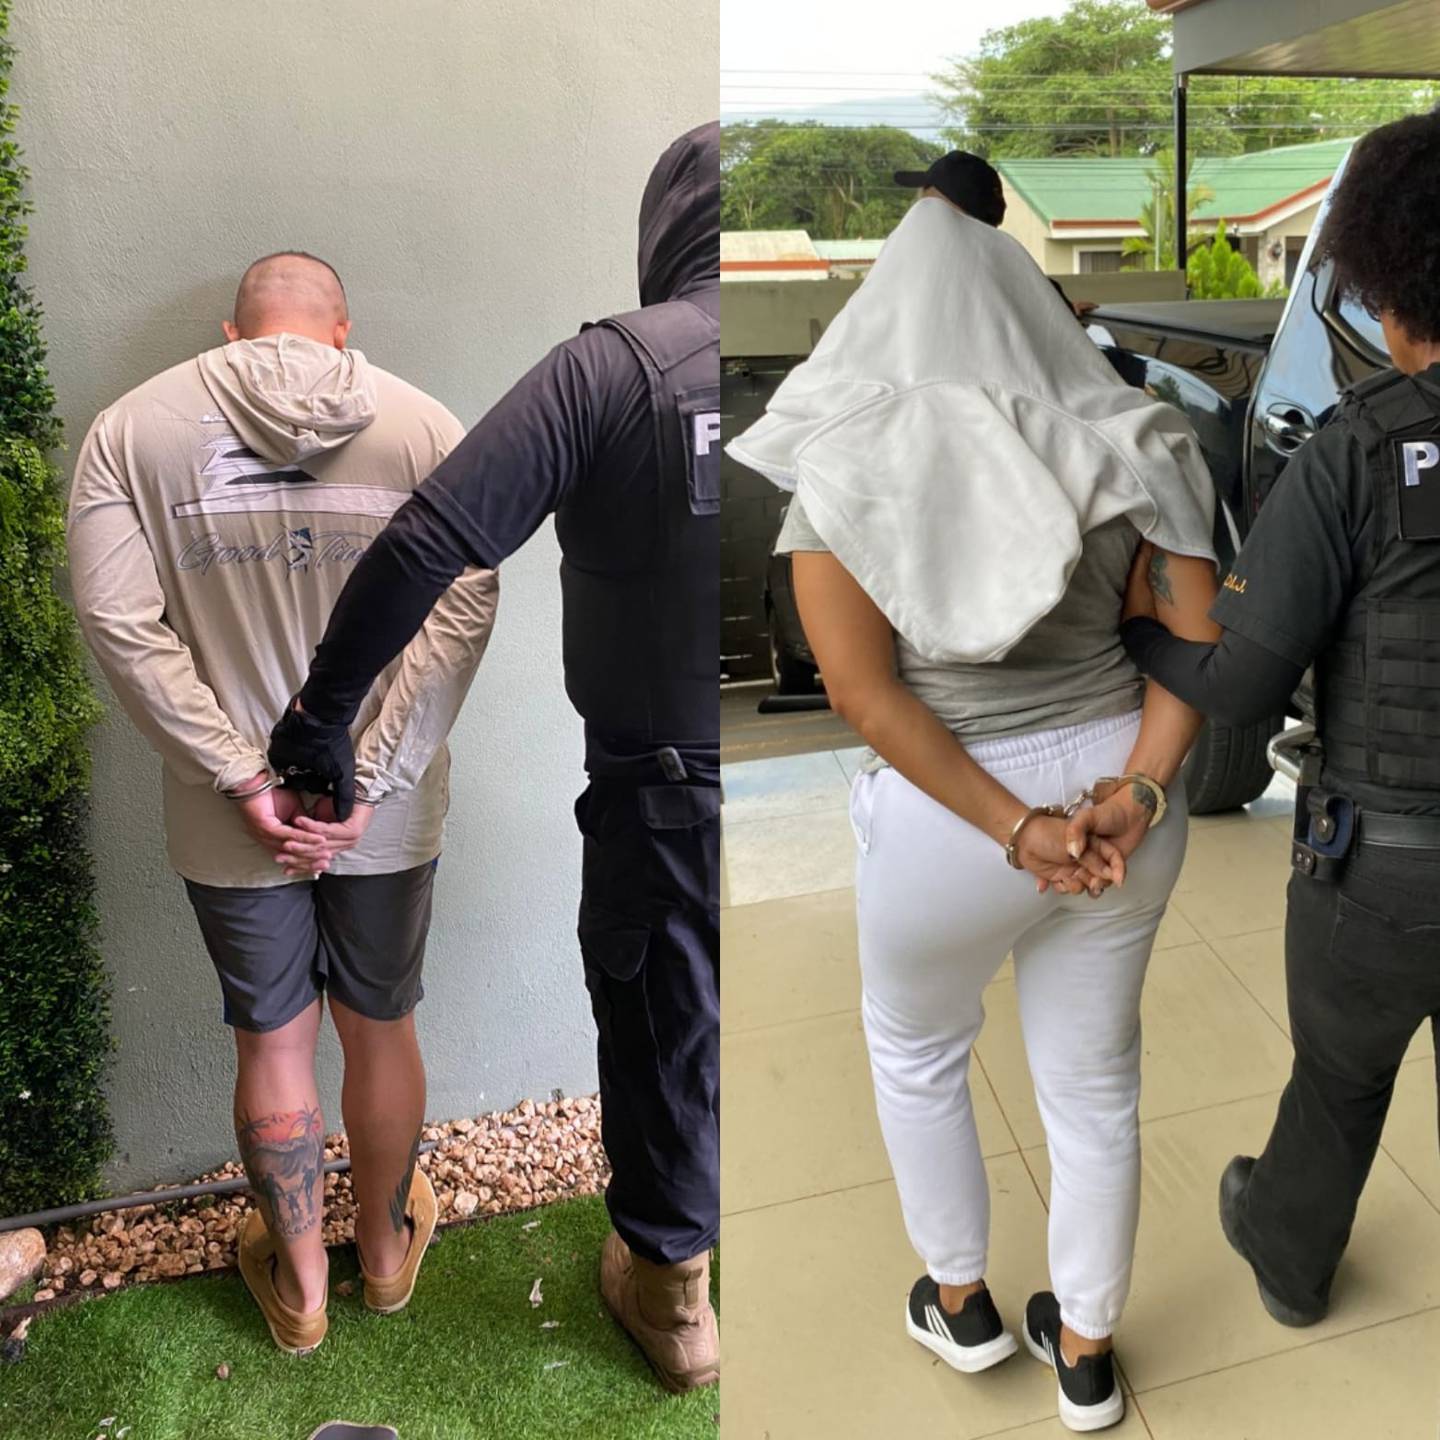 El guardacosta Juárez Rodríguez, de 32 años y su pareja Acevedo Duarte de 35 años detenidos por ser sospechosos de formar parte de una banda narco. Foto OIJ